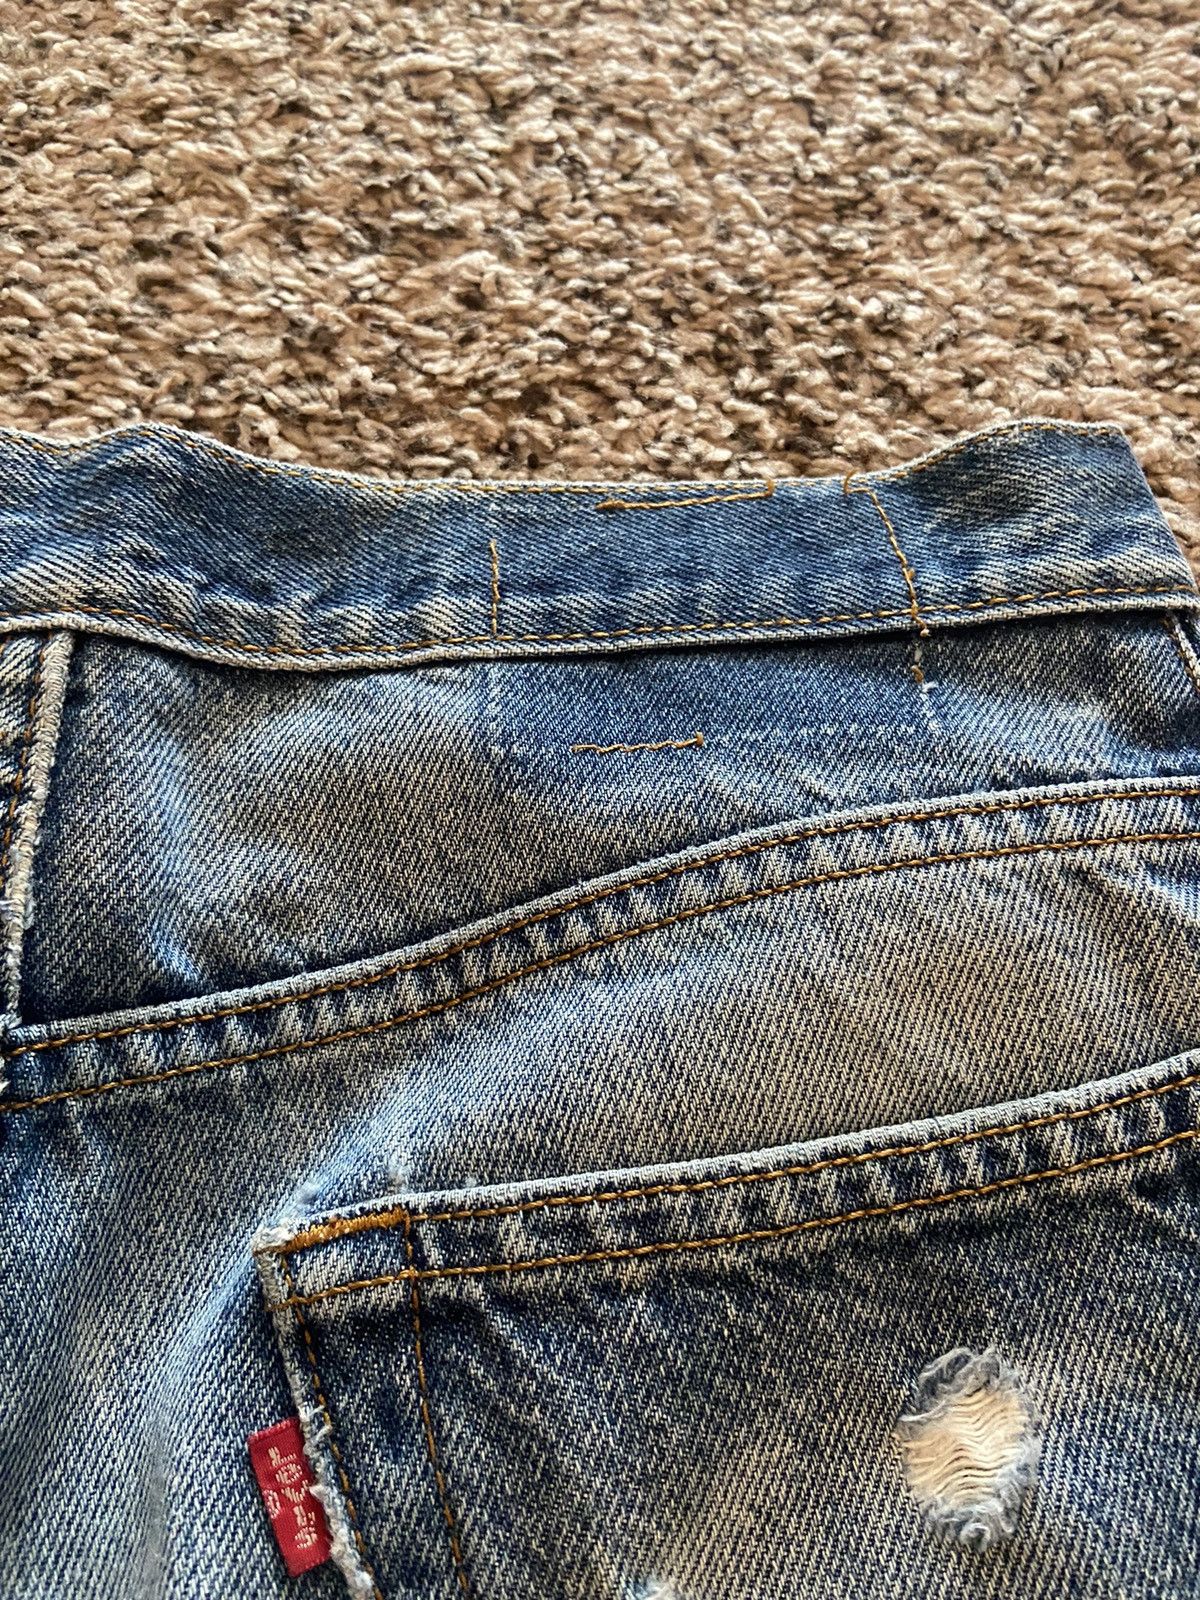 Vintage Vintage Levi’s 505 Distressed Denim Jeans Size US 30 / EU 46 - 9 Thumbnail